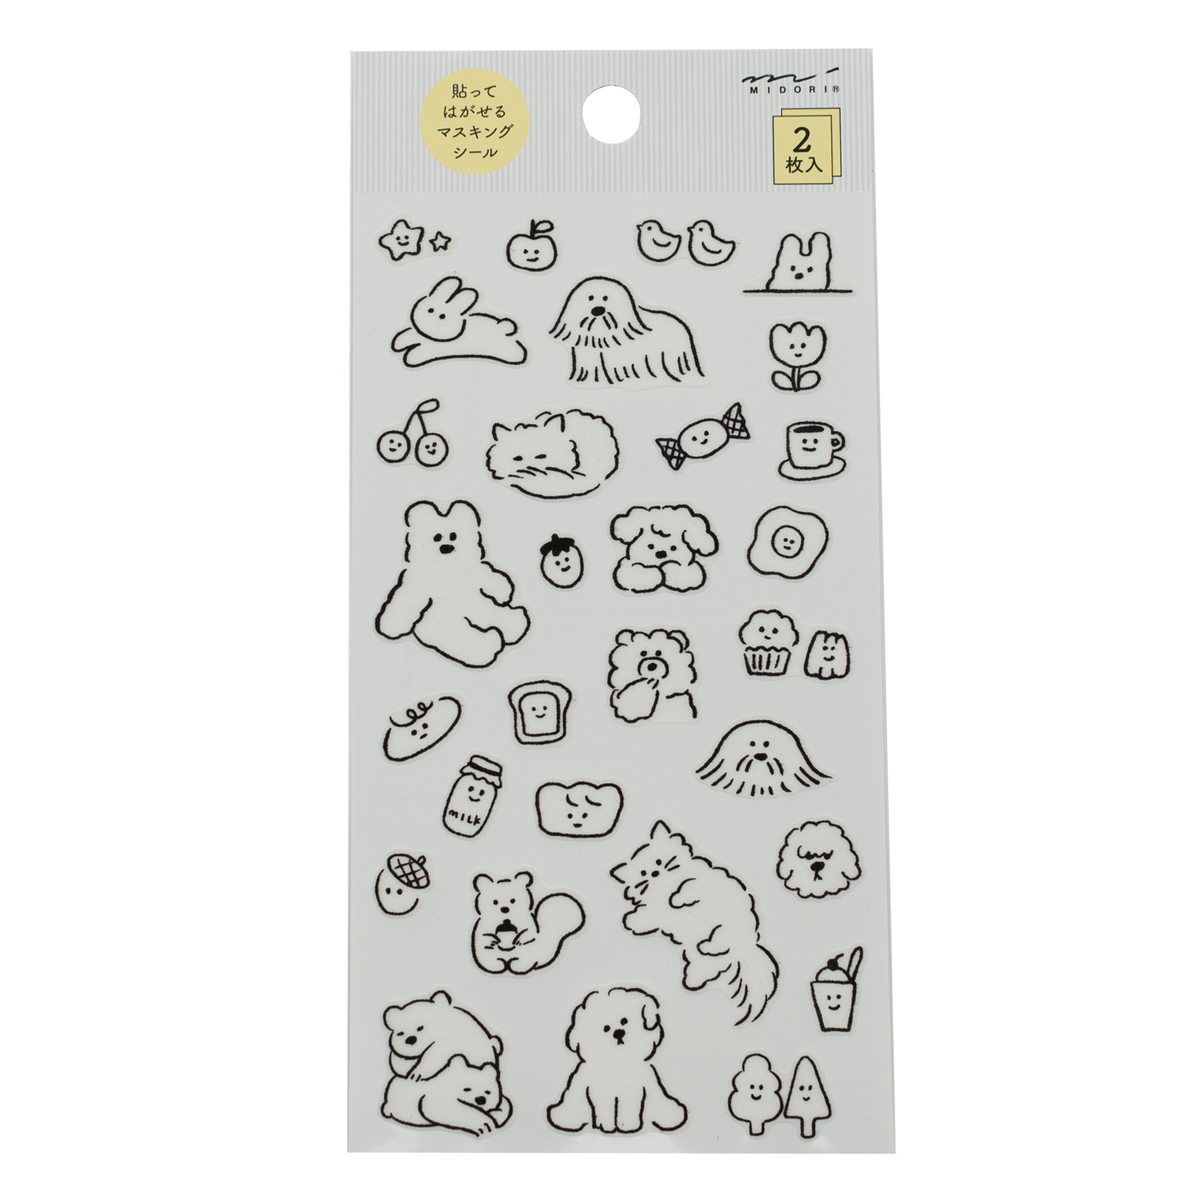 Midori Notebook Stickers - Cute Motif